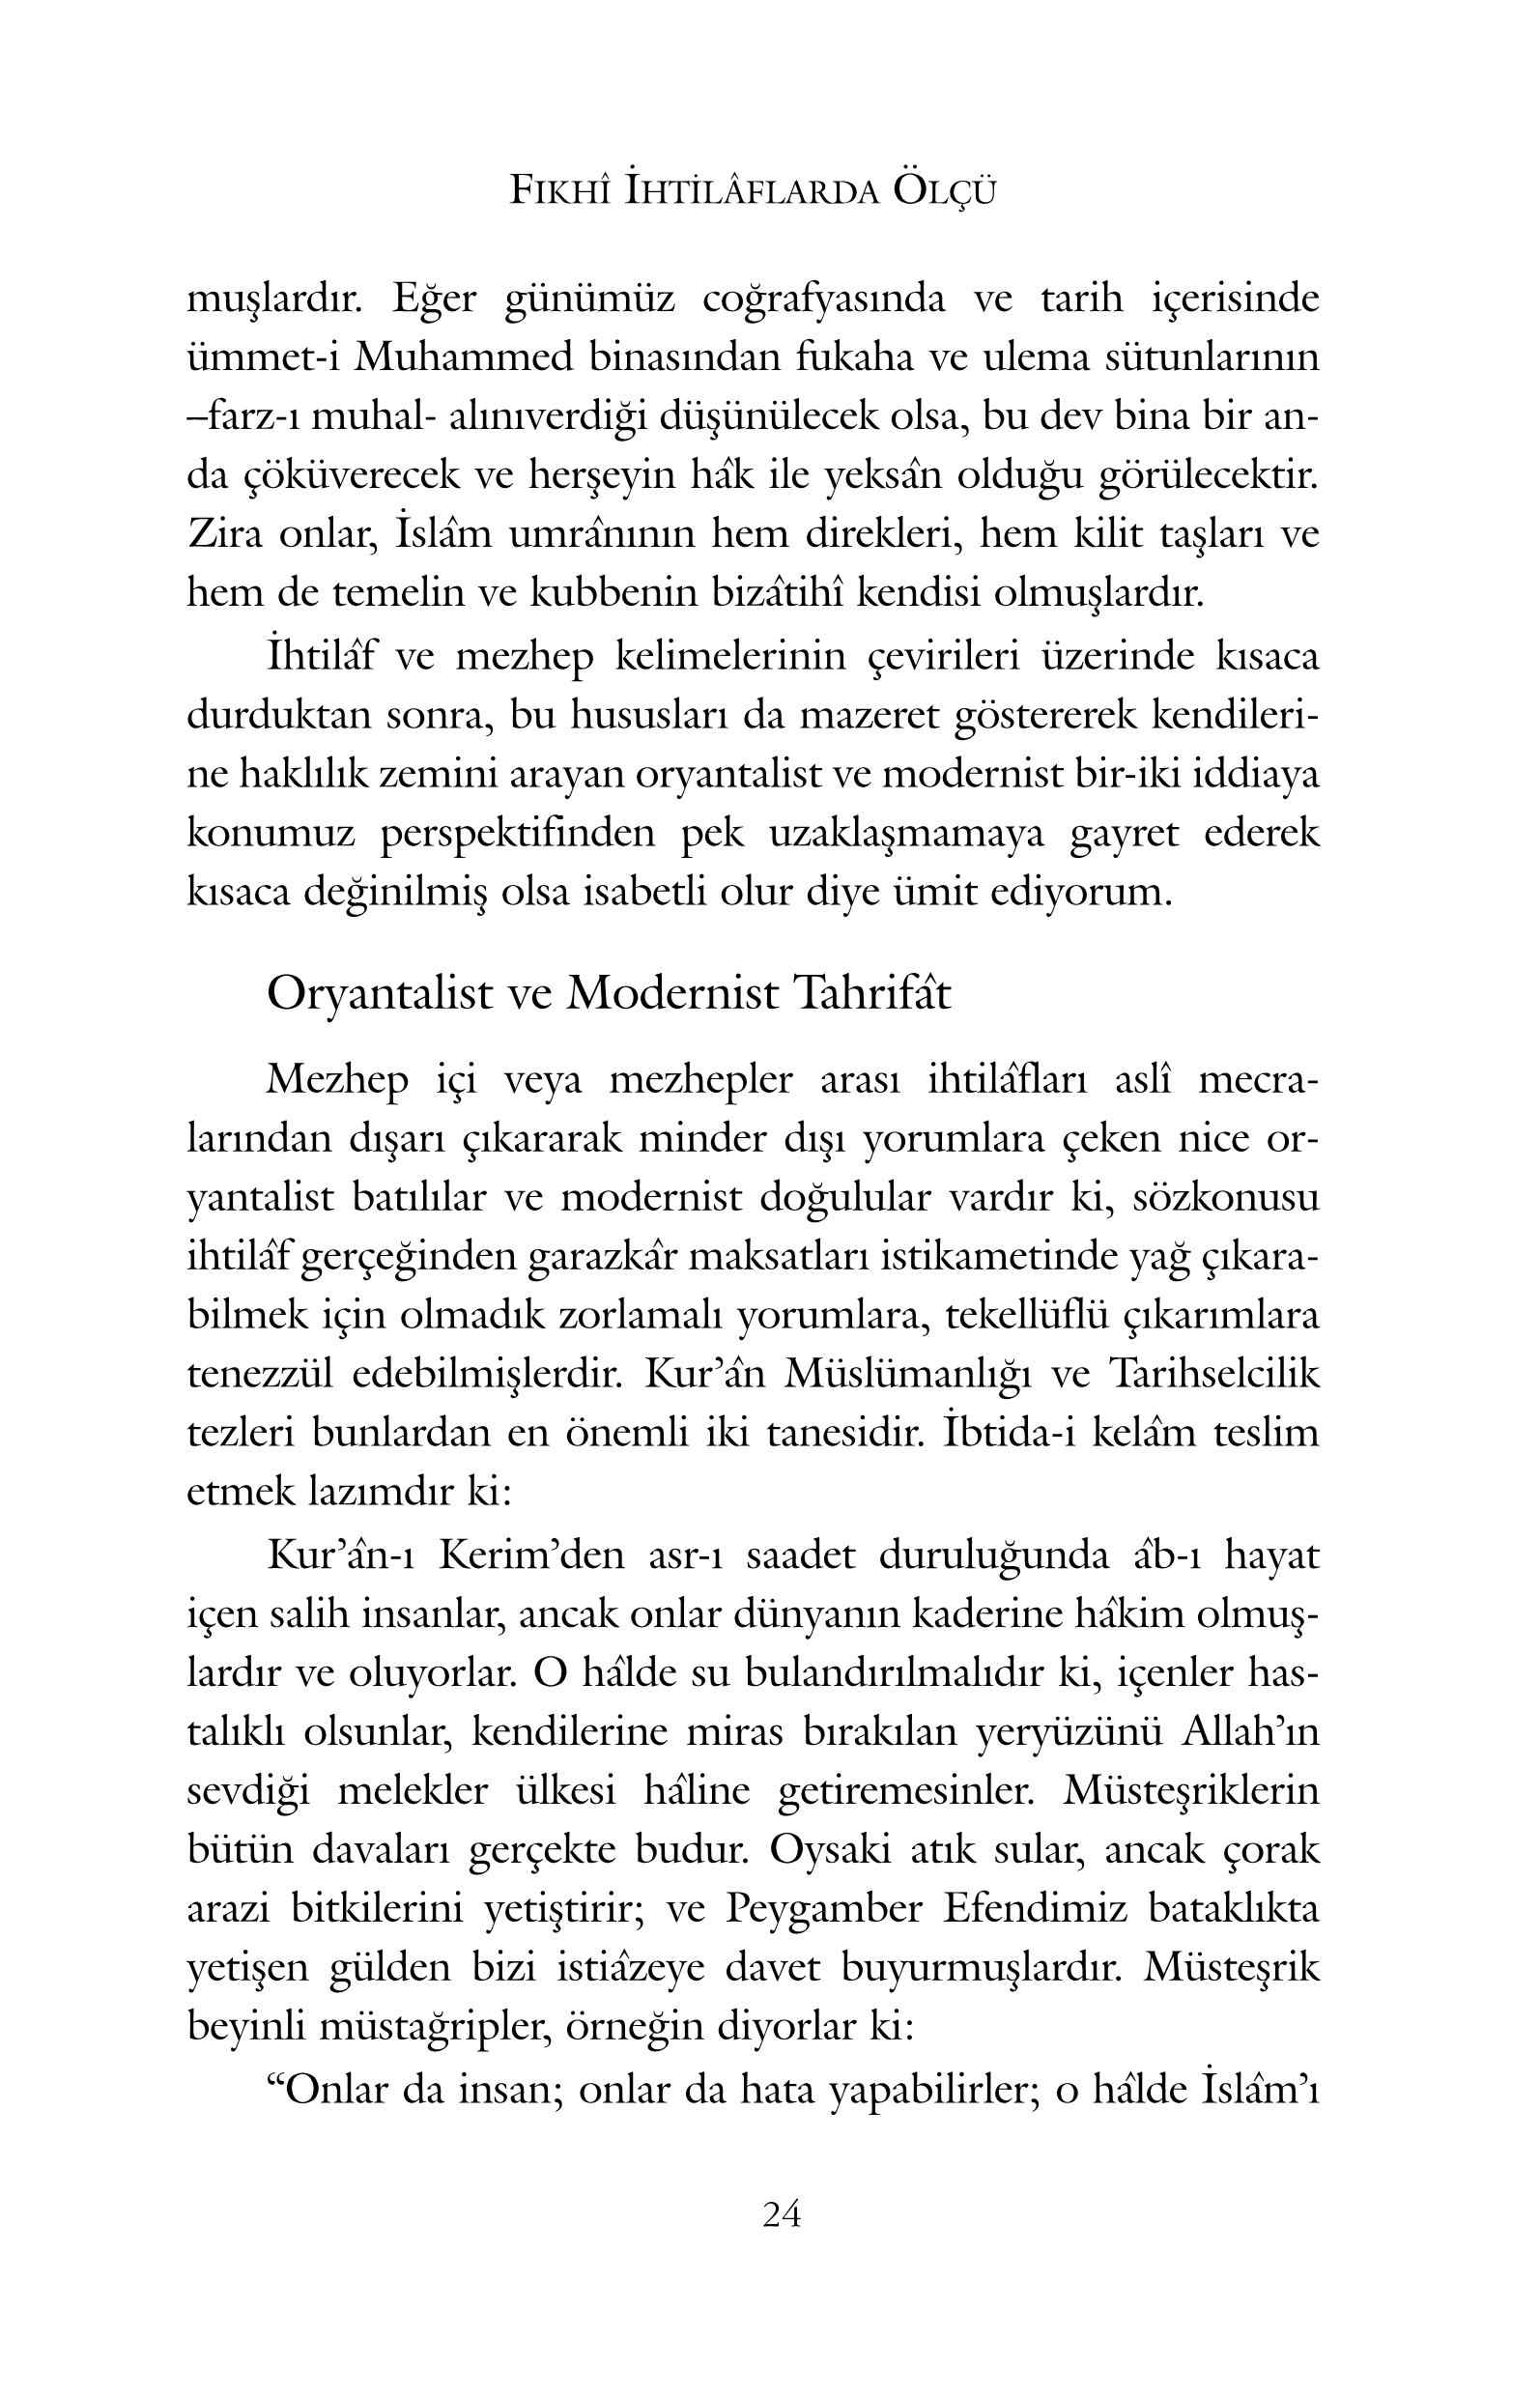 Sah Veliyyullah Ed Dihlevi - Musa Hub - Fikhi Ihtilaflarda Olcu - IsikAkademiY.pdf, 265-Sayfa 